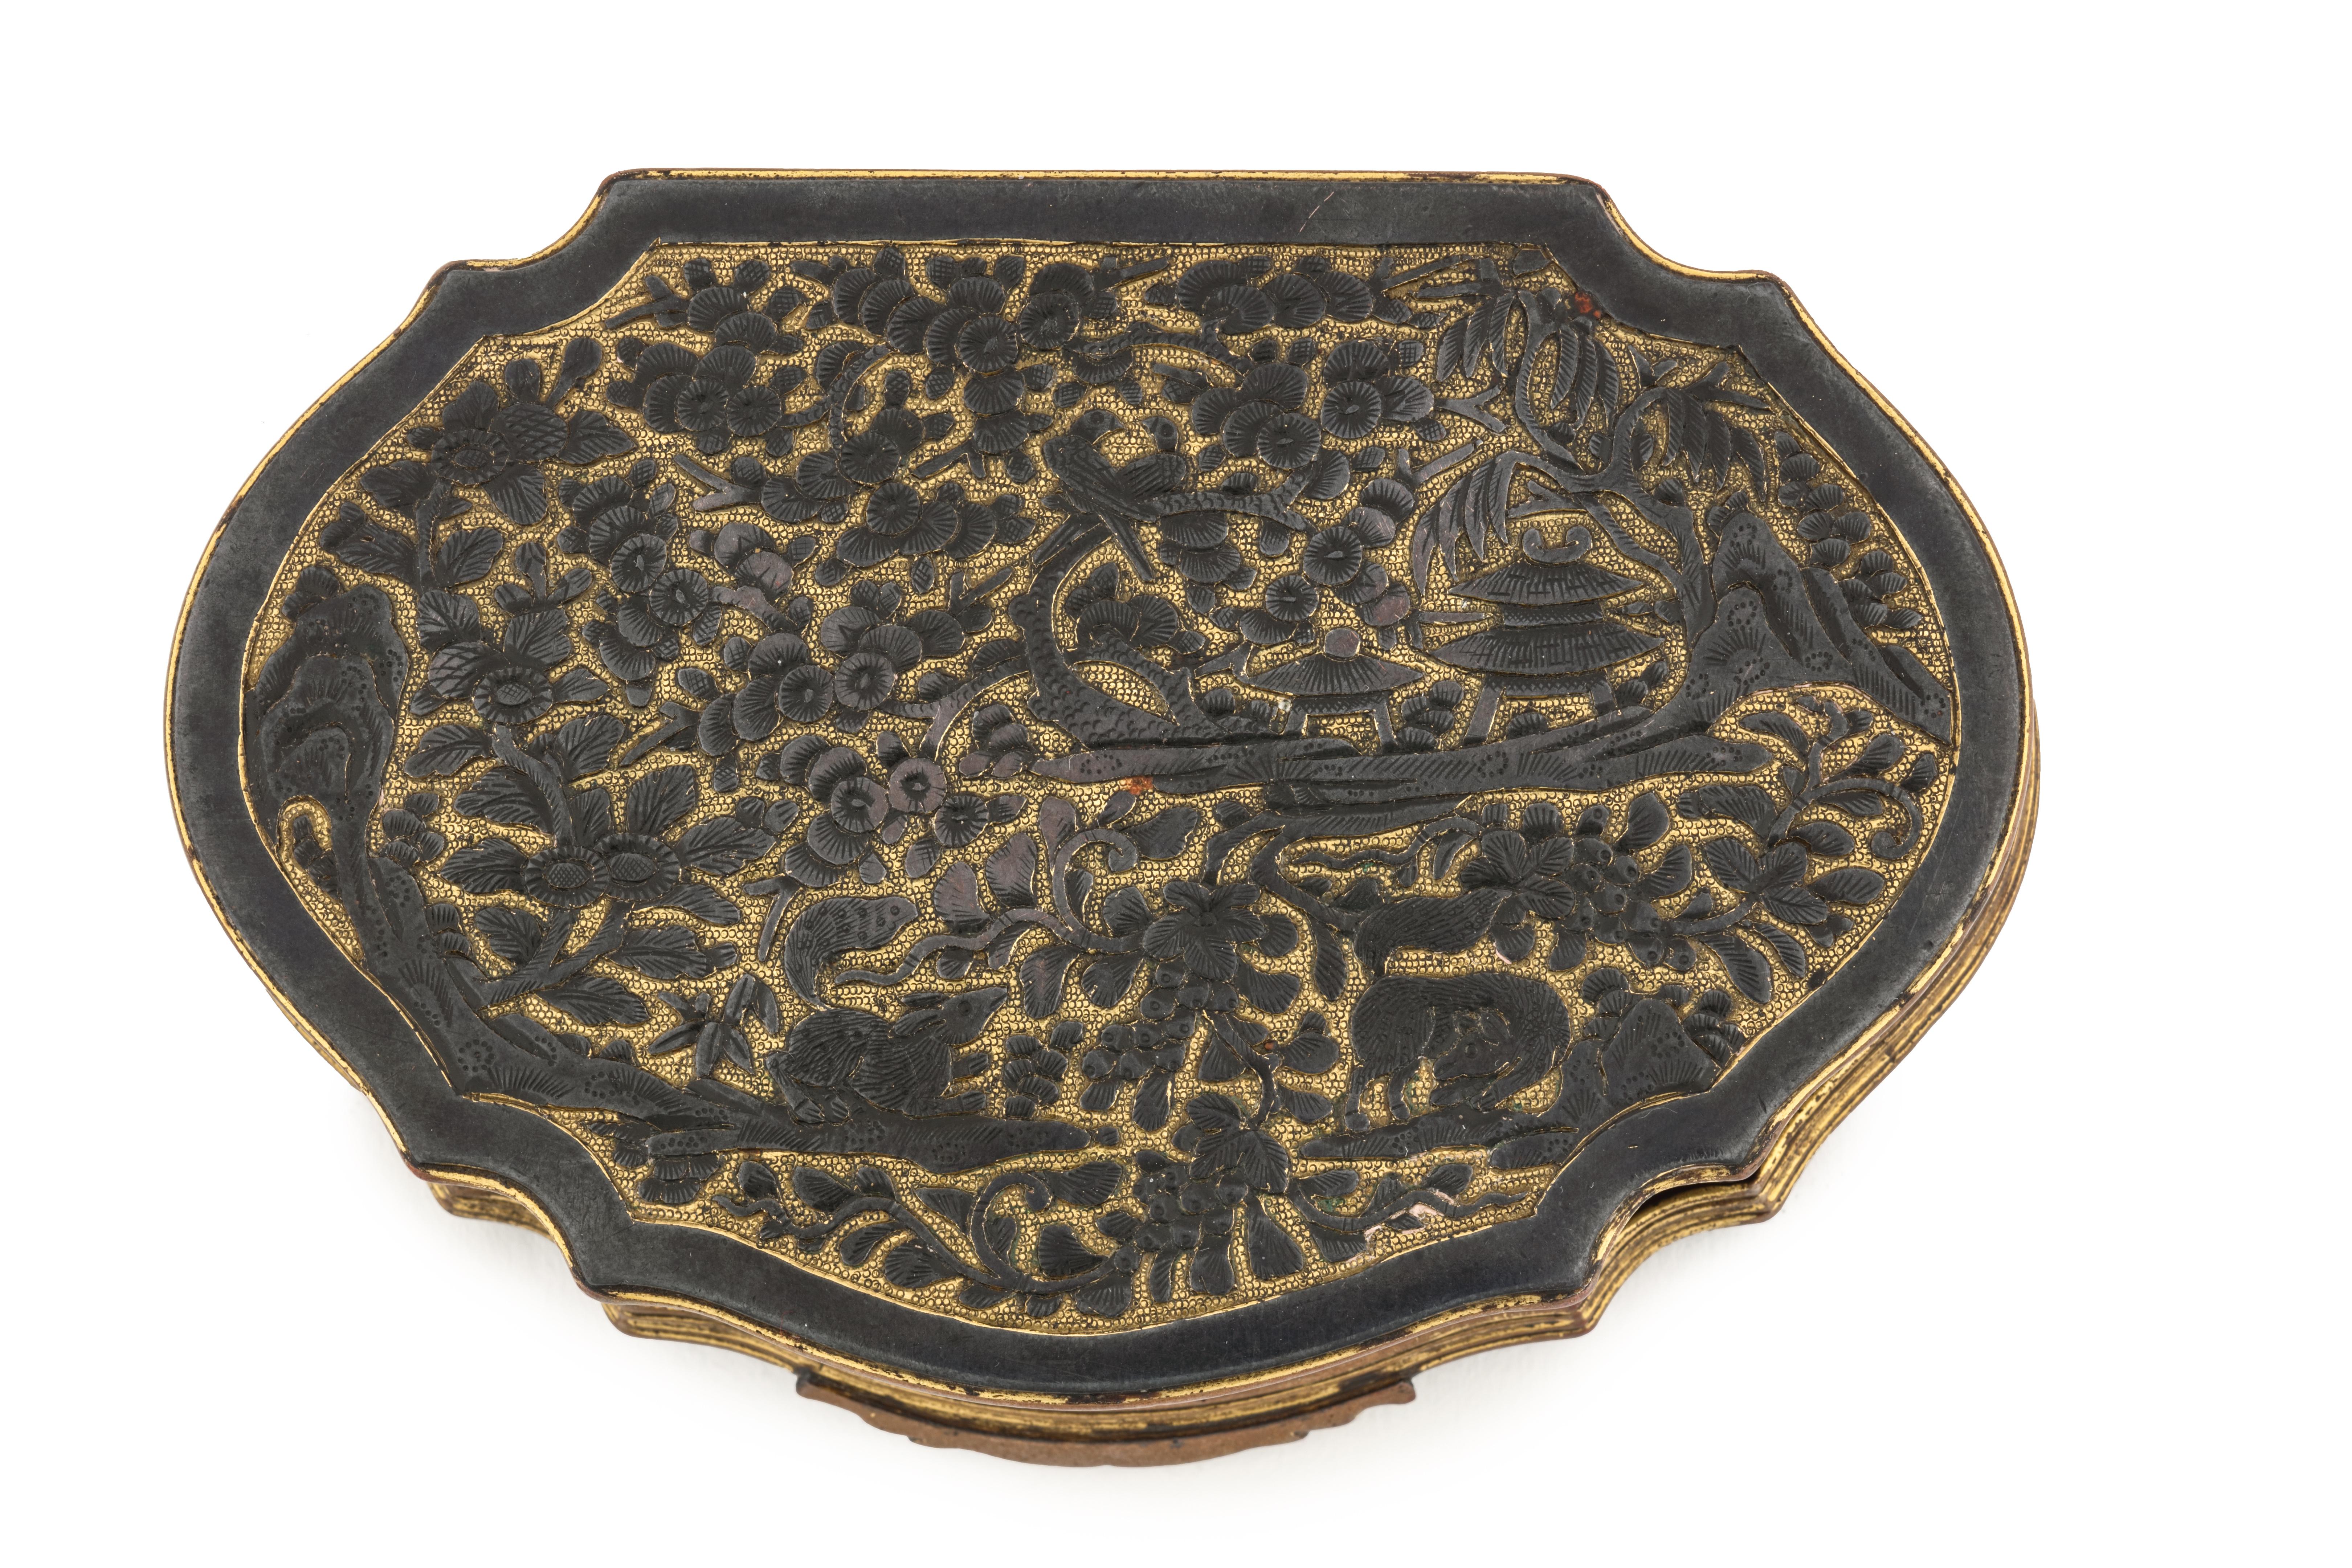 Tabatière ou tabatière érotique de style Shakudo en forme de ruyi, décorée en relief avec des figures argentées appliquées

Possiblement Jakarta (Batavia), première moitié du 18e siècle

Mesures : H. 2.2 x L. 12.1 x W. 8 cm

Cette boîte est